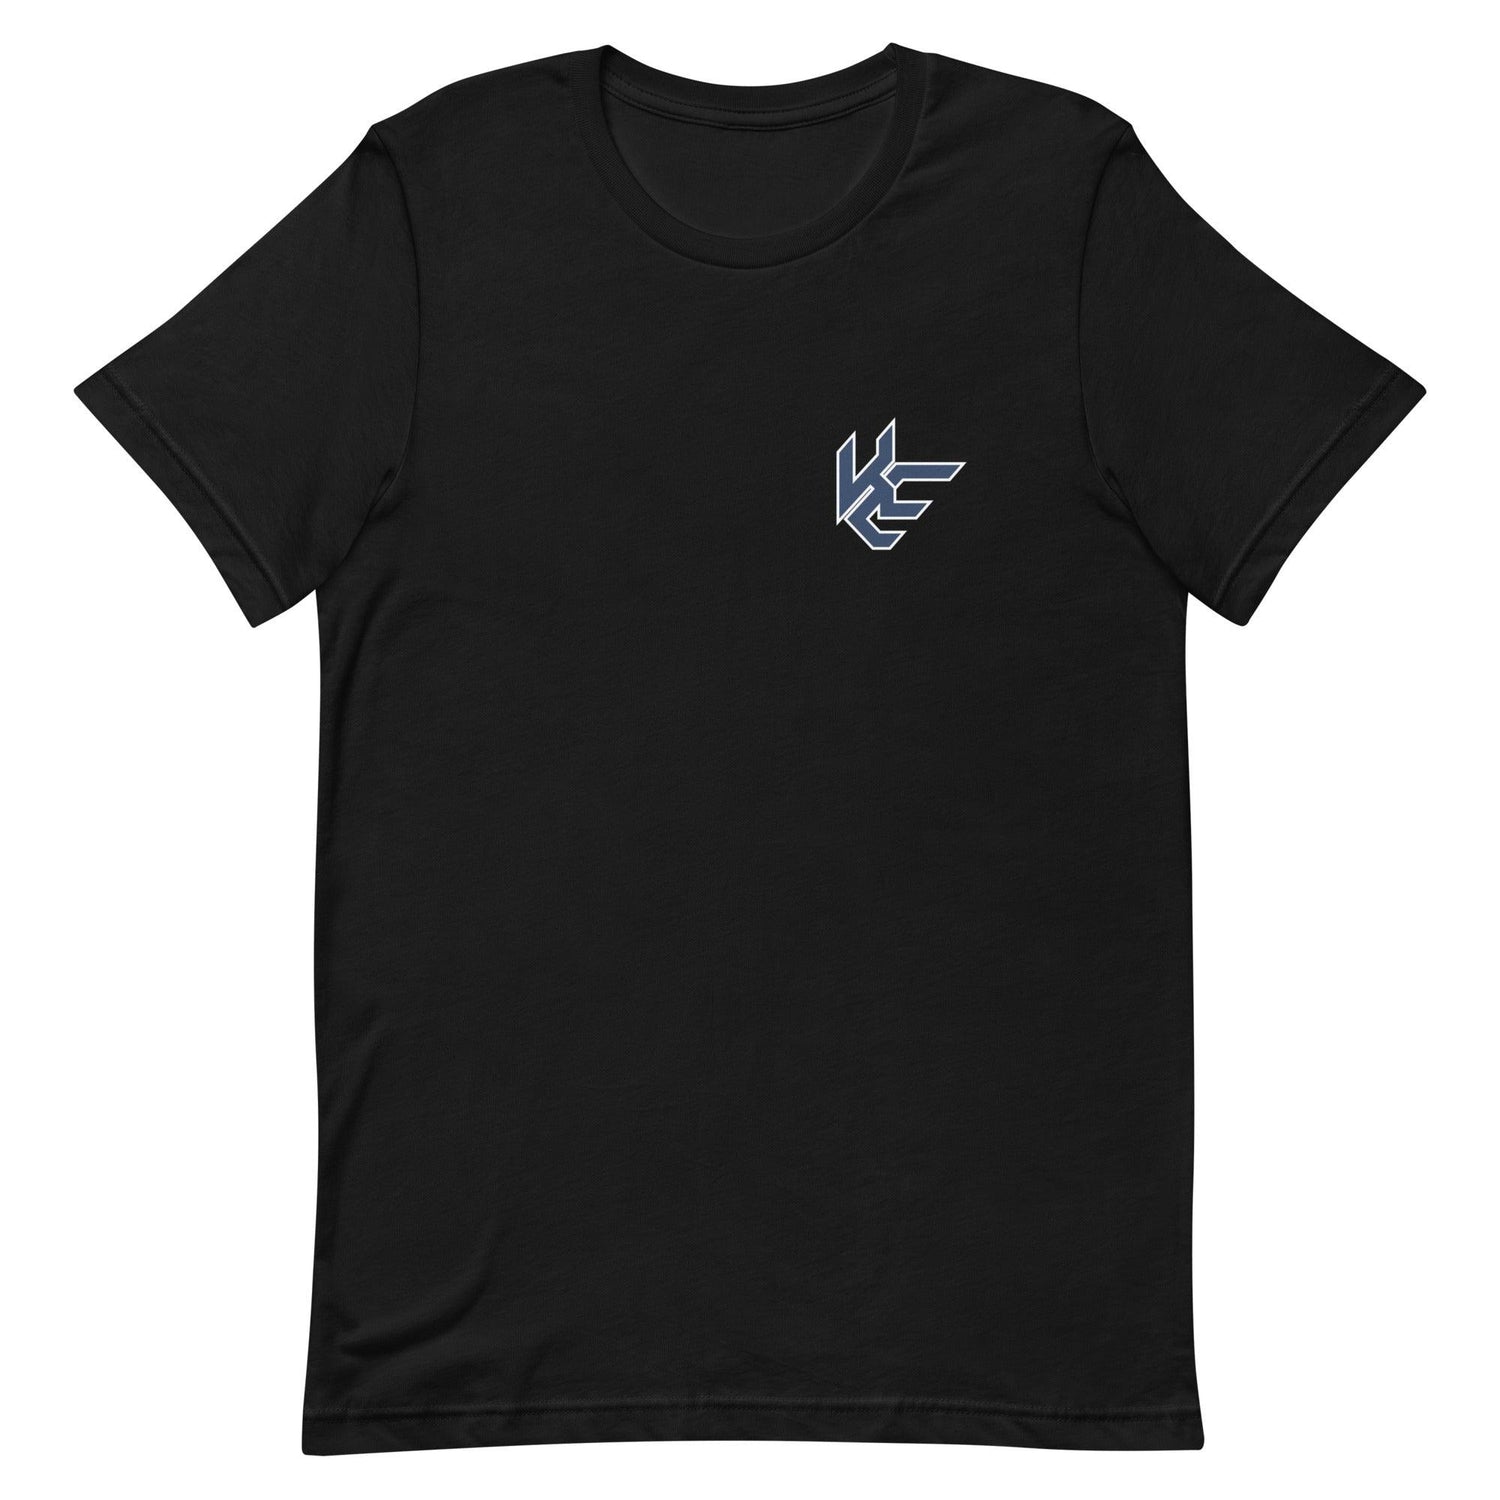 Katron Evans "Essential" t-shirt - Fan Arch